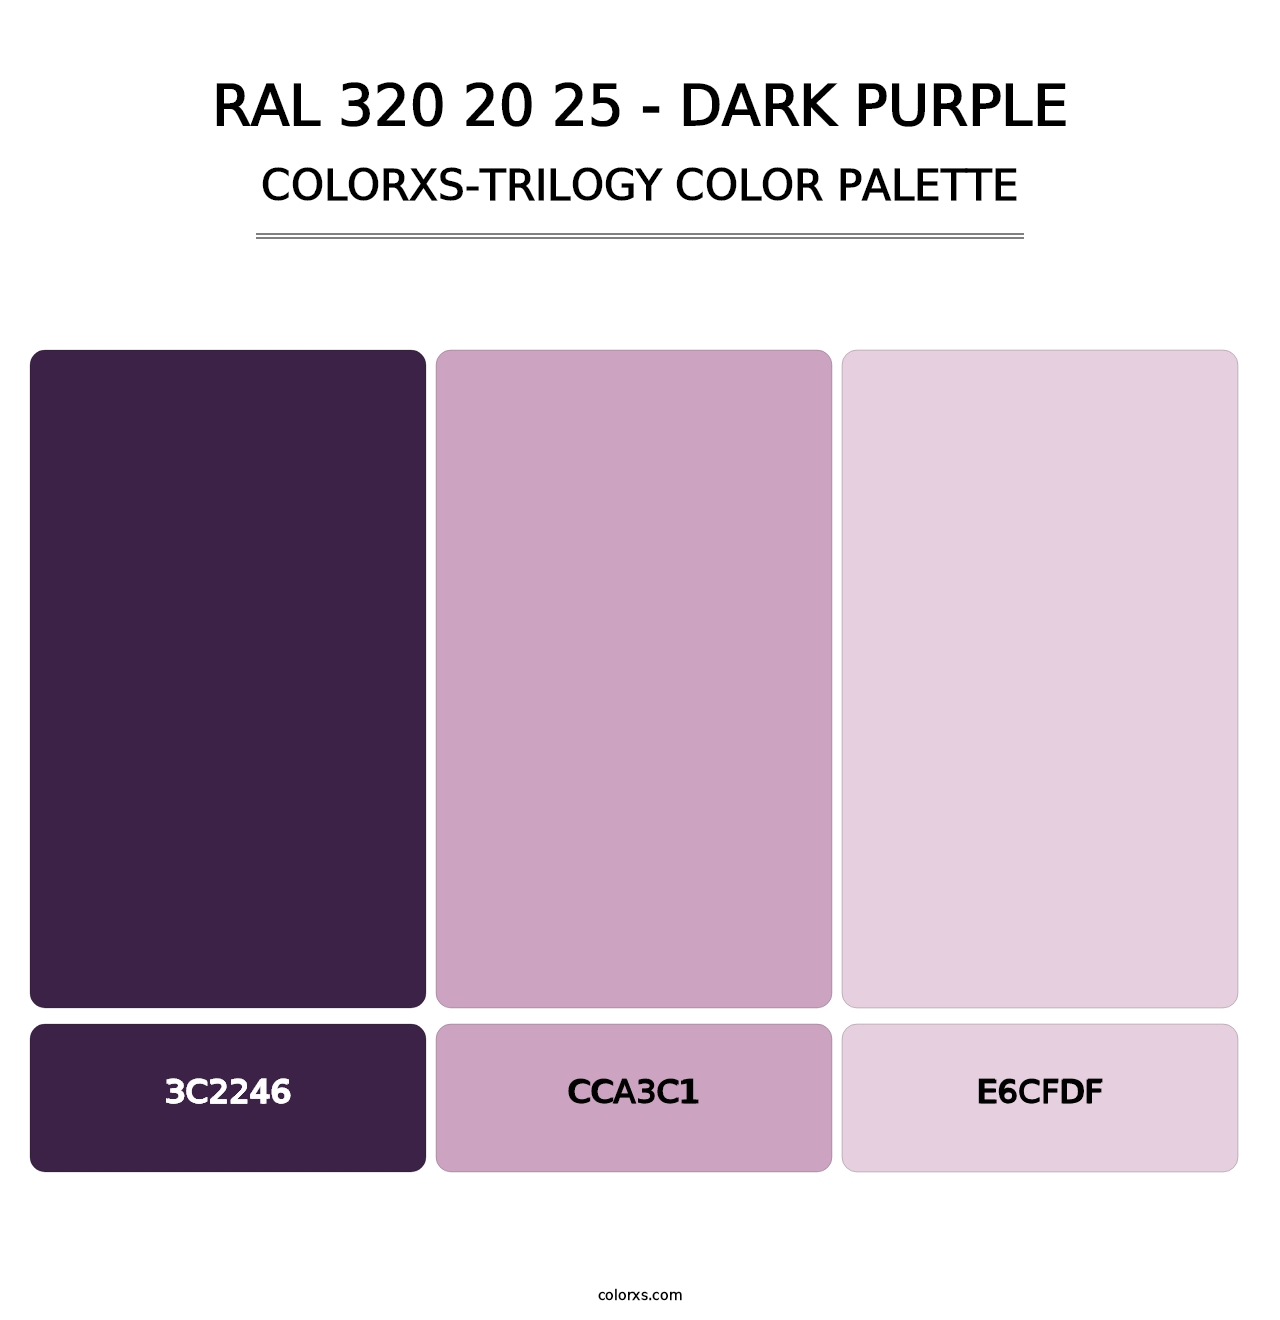 RAL 320 20 25 - Dark Purple - Colorxs Trilogy Palette